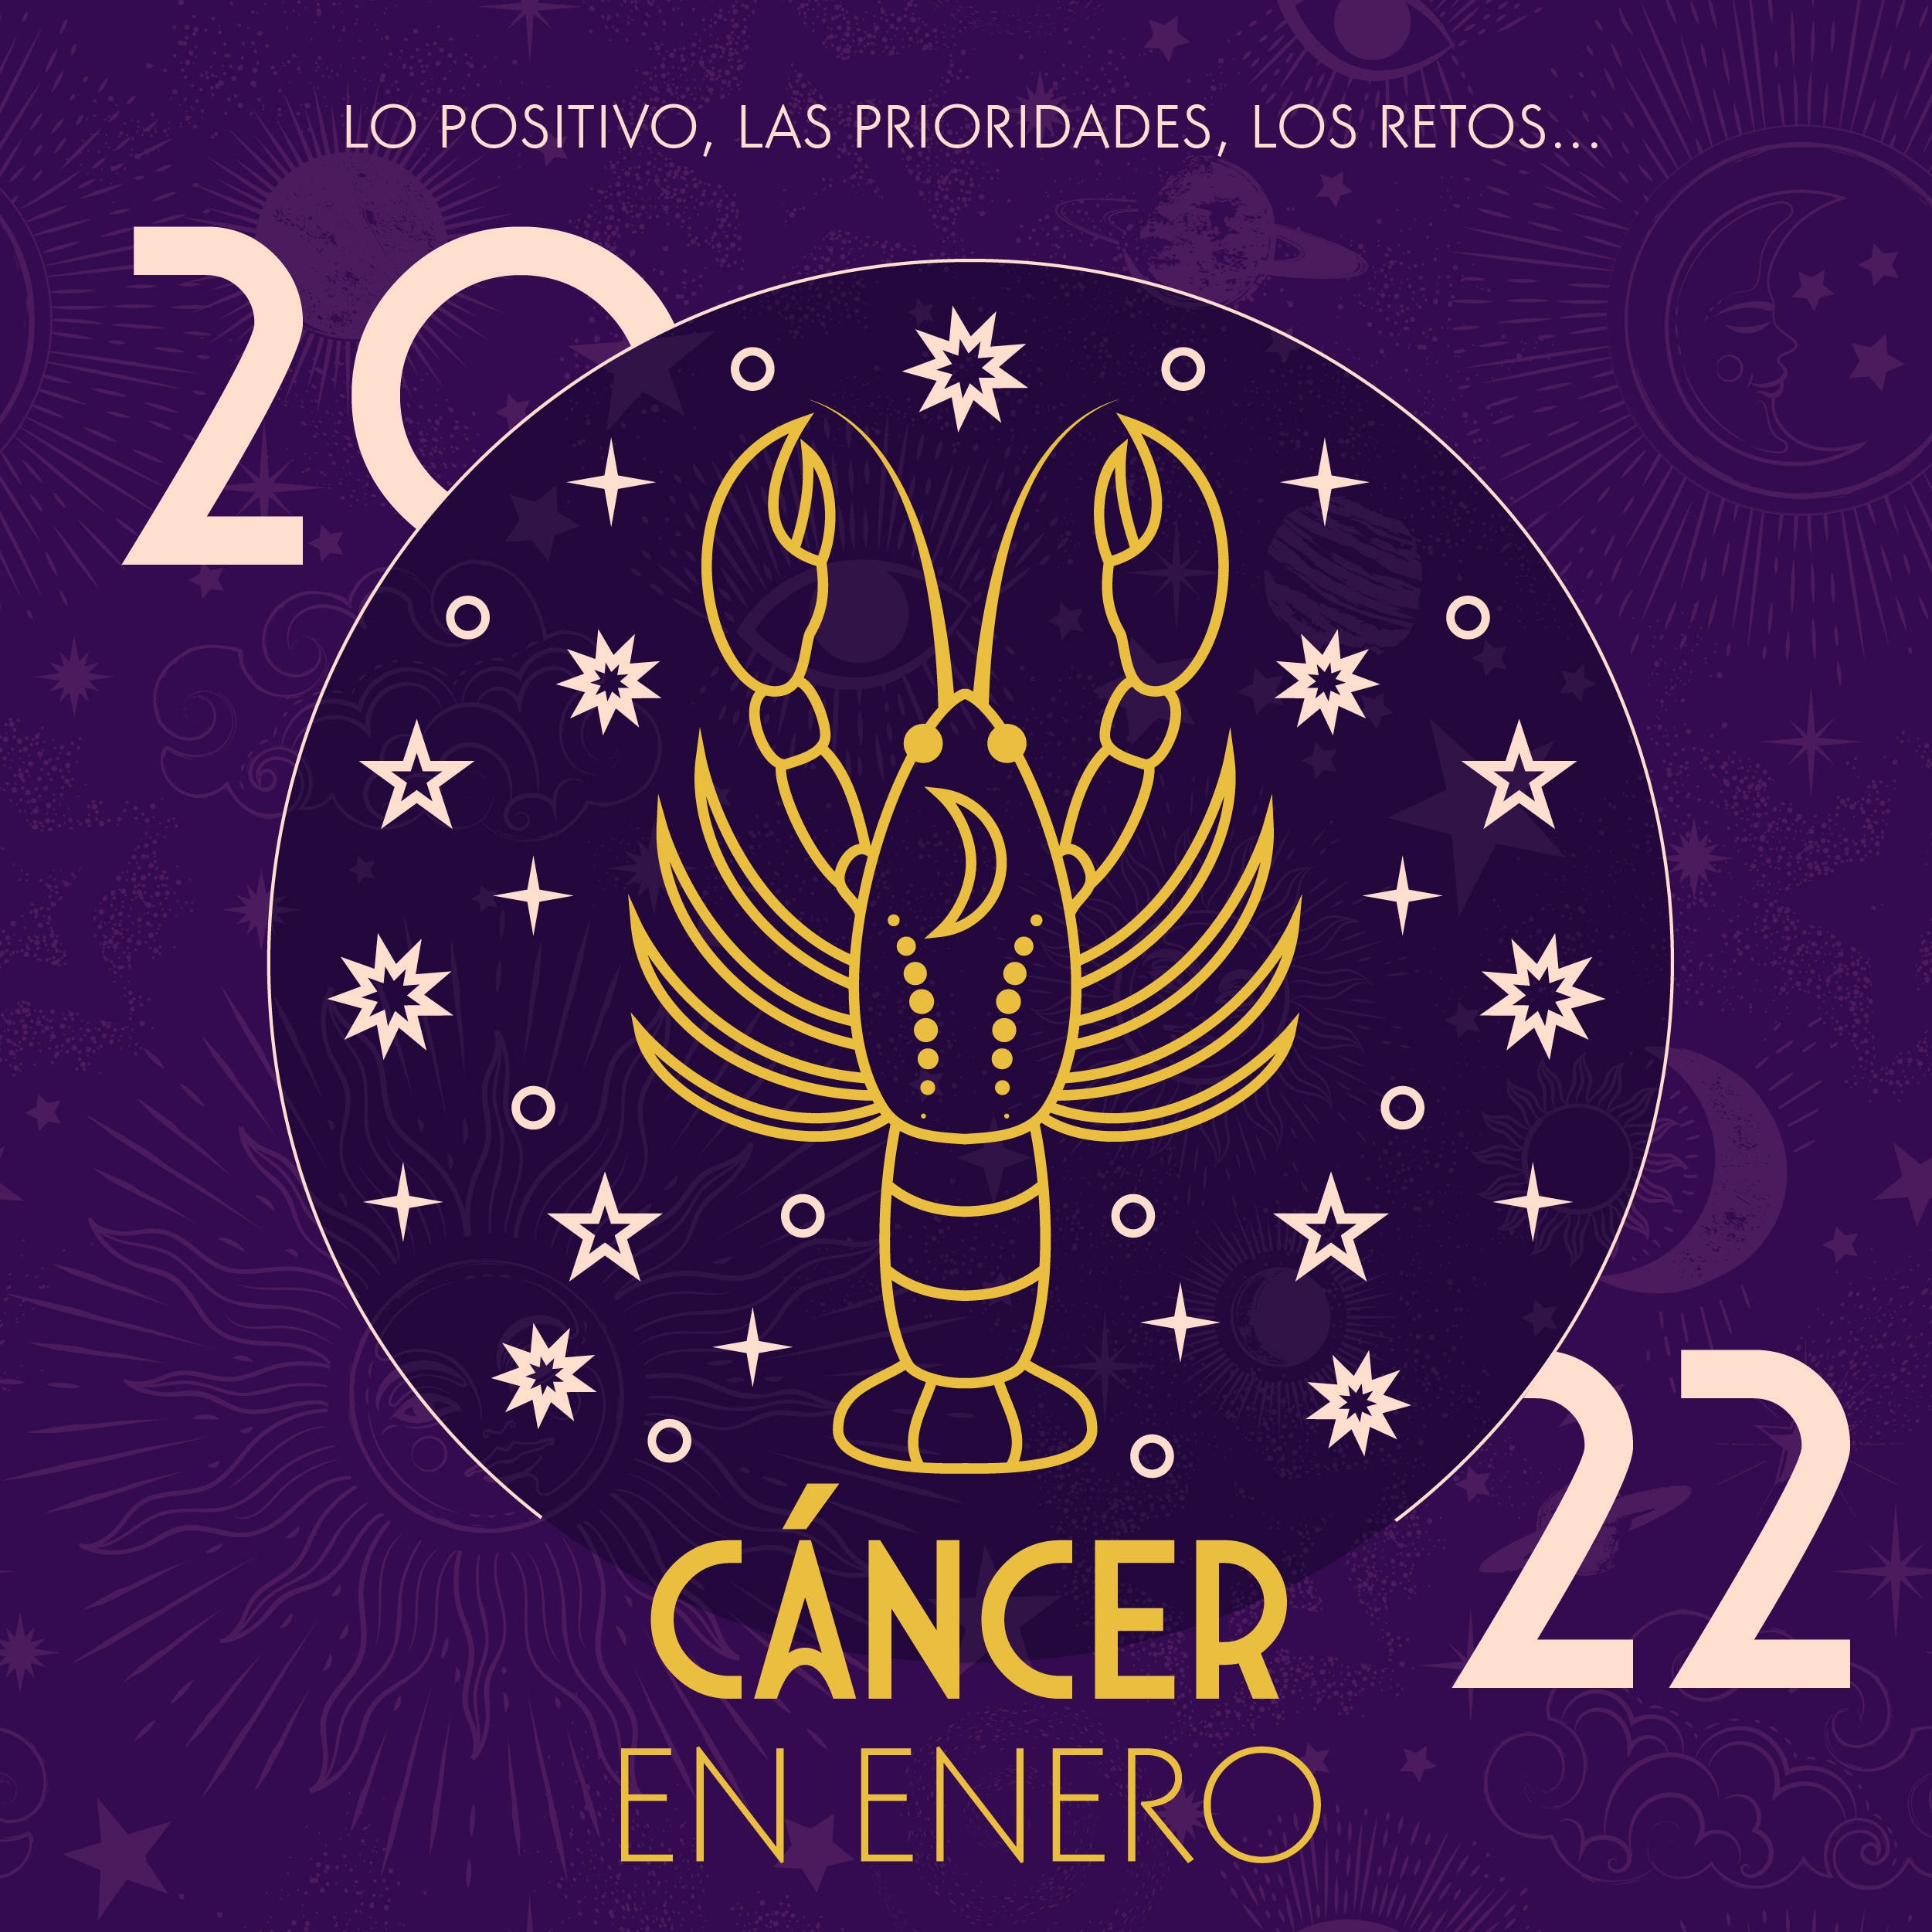 Podcast de astrología | Cáncer en enero de 2022 | Signos Zodiacales